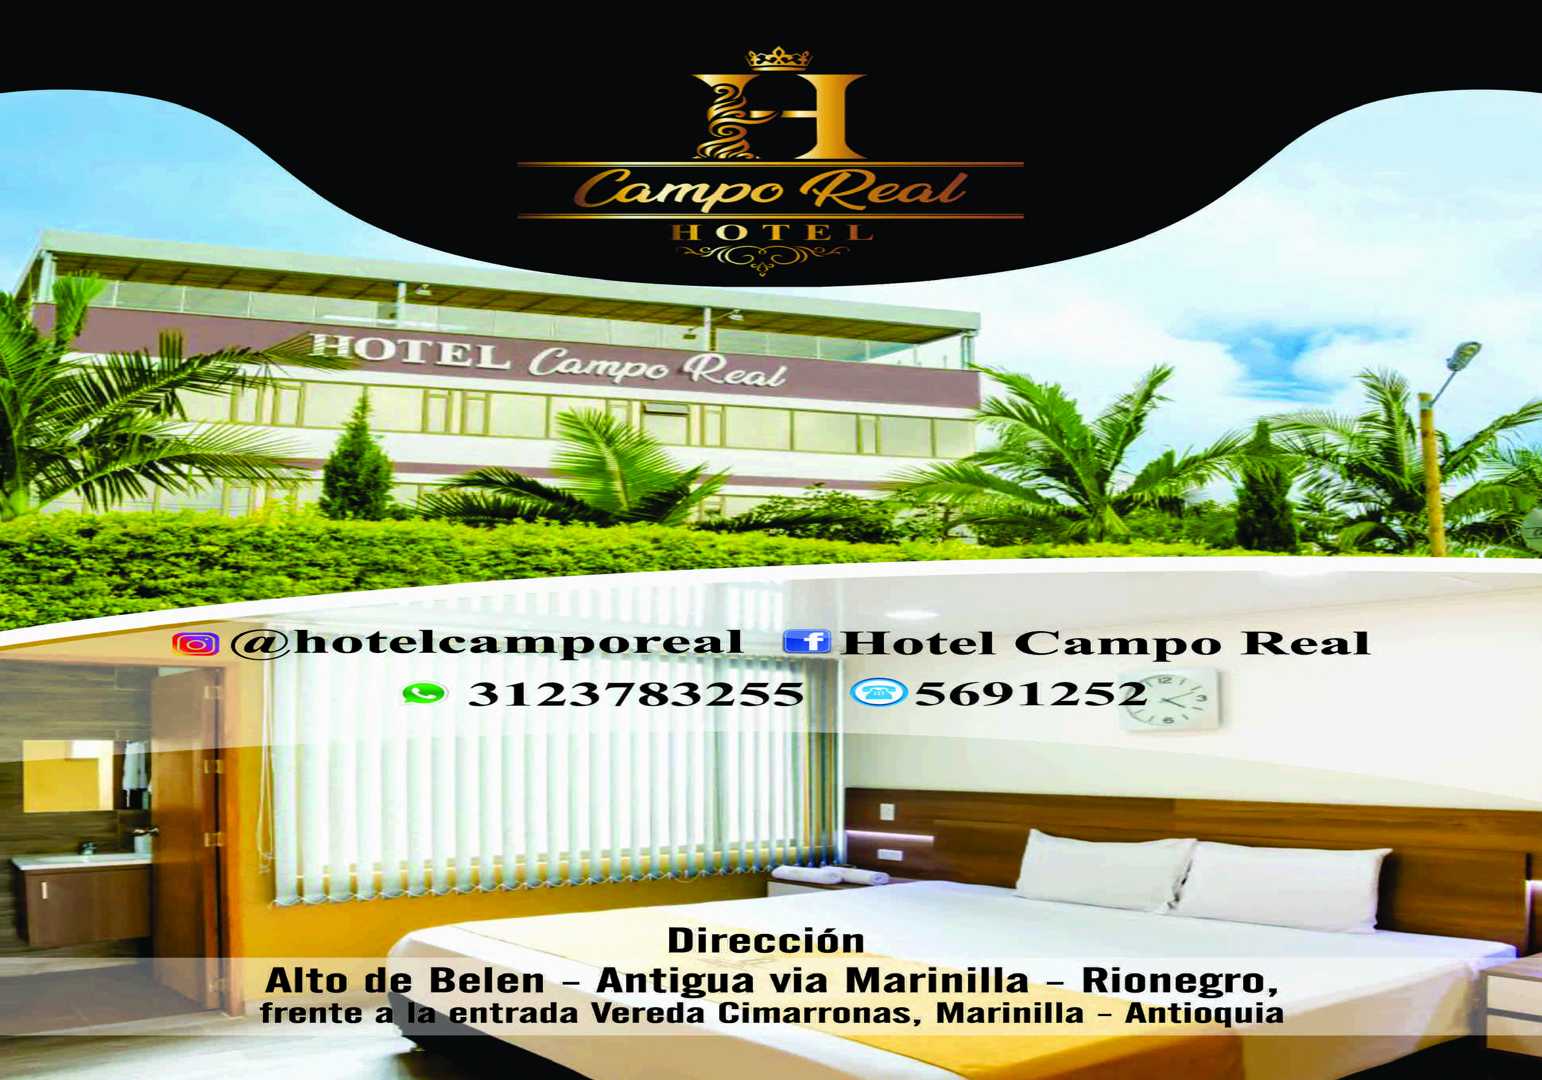 Hotel Campo Real - Marinilla Antioquia